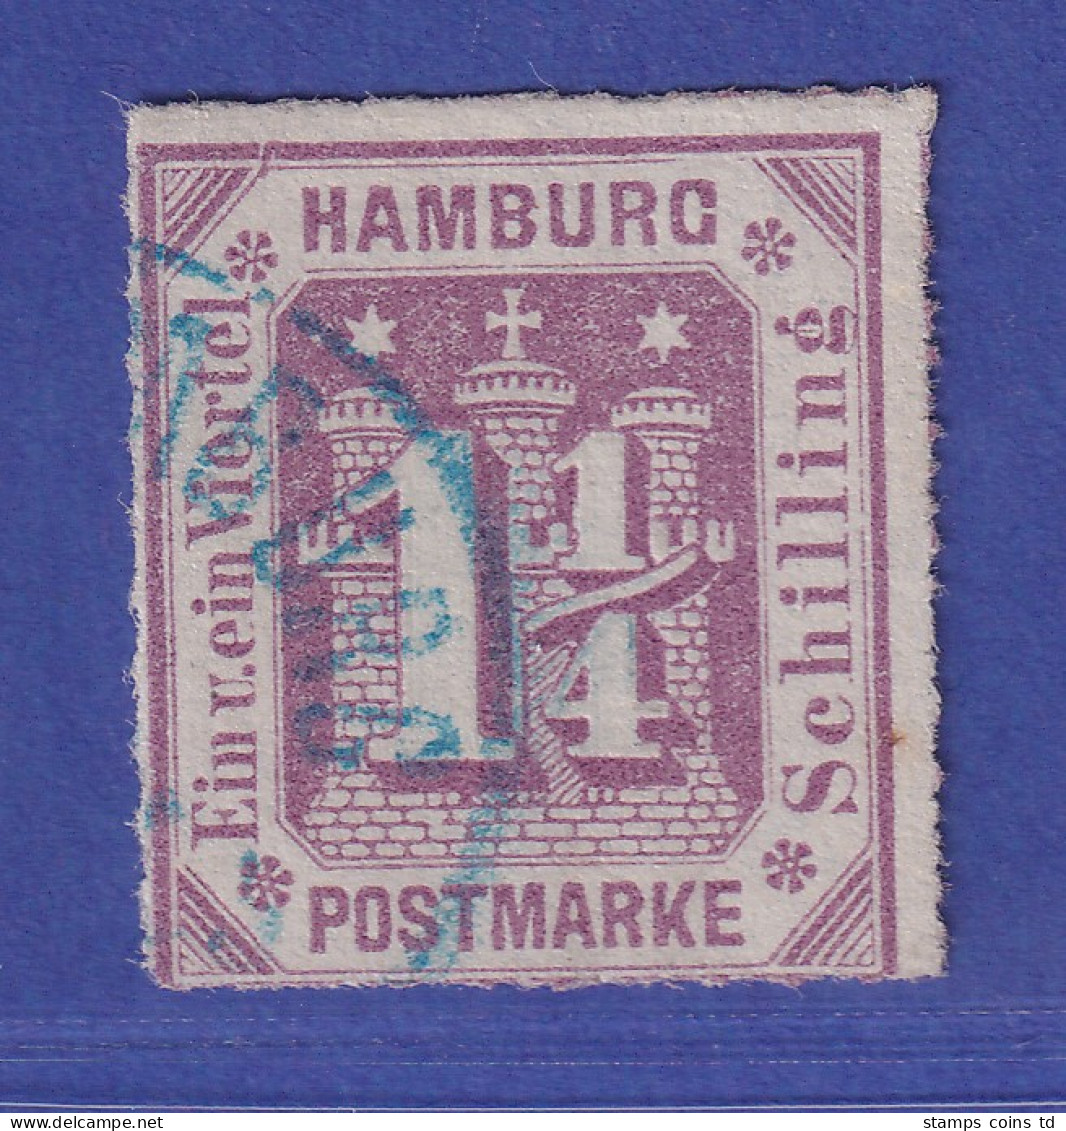 Hamburg 1866 Wertziffer 1 1/4 Schillinge Mi.-Nr. 20 A  O  Gepr. PFENNINGER - Hamburg